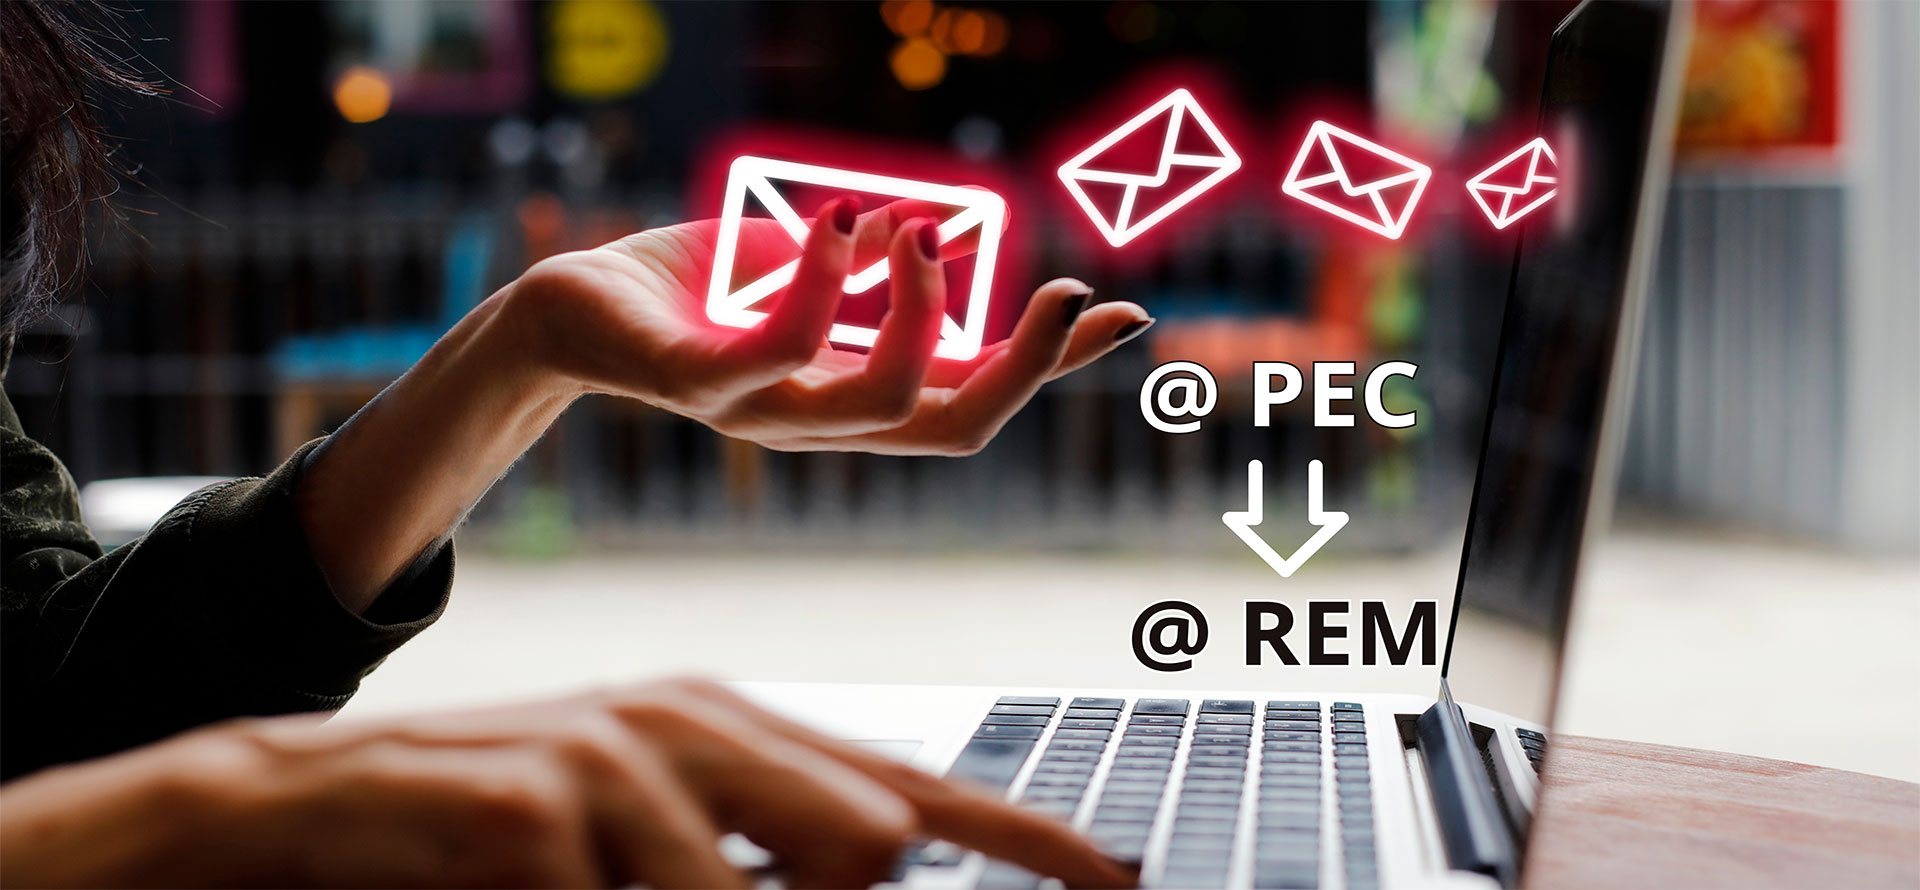 La PEC (posta elettronica certificata) lascia il posto alla REM (Registered Electronic Mail)